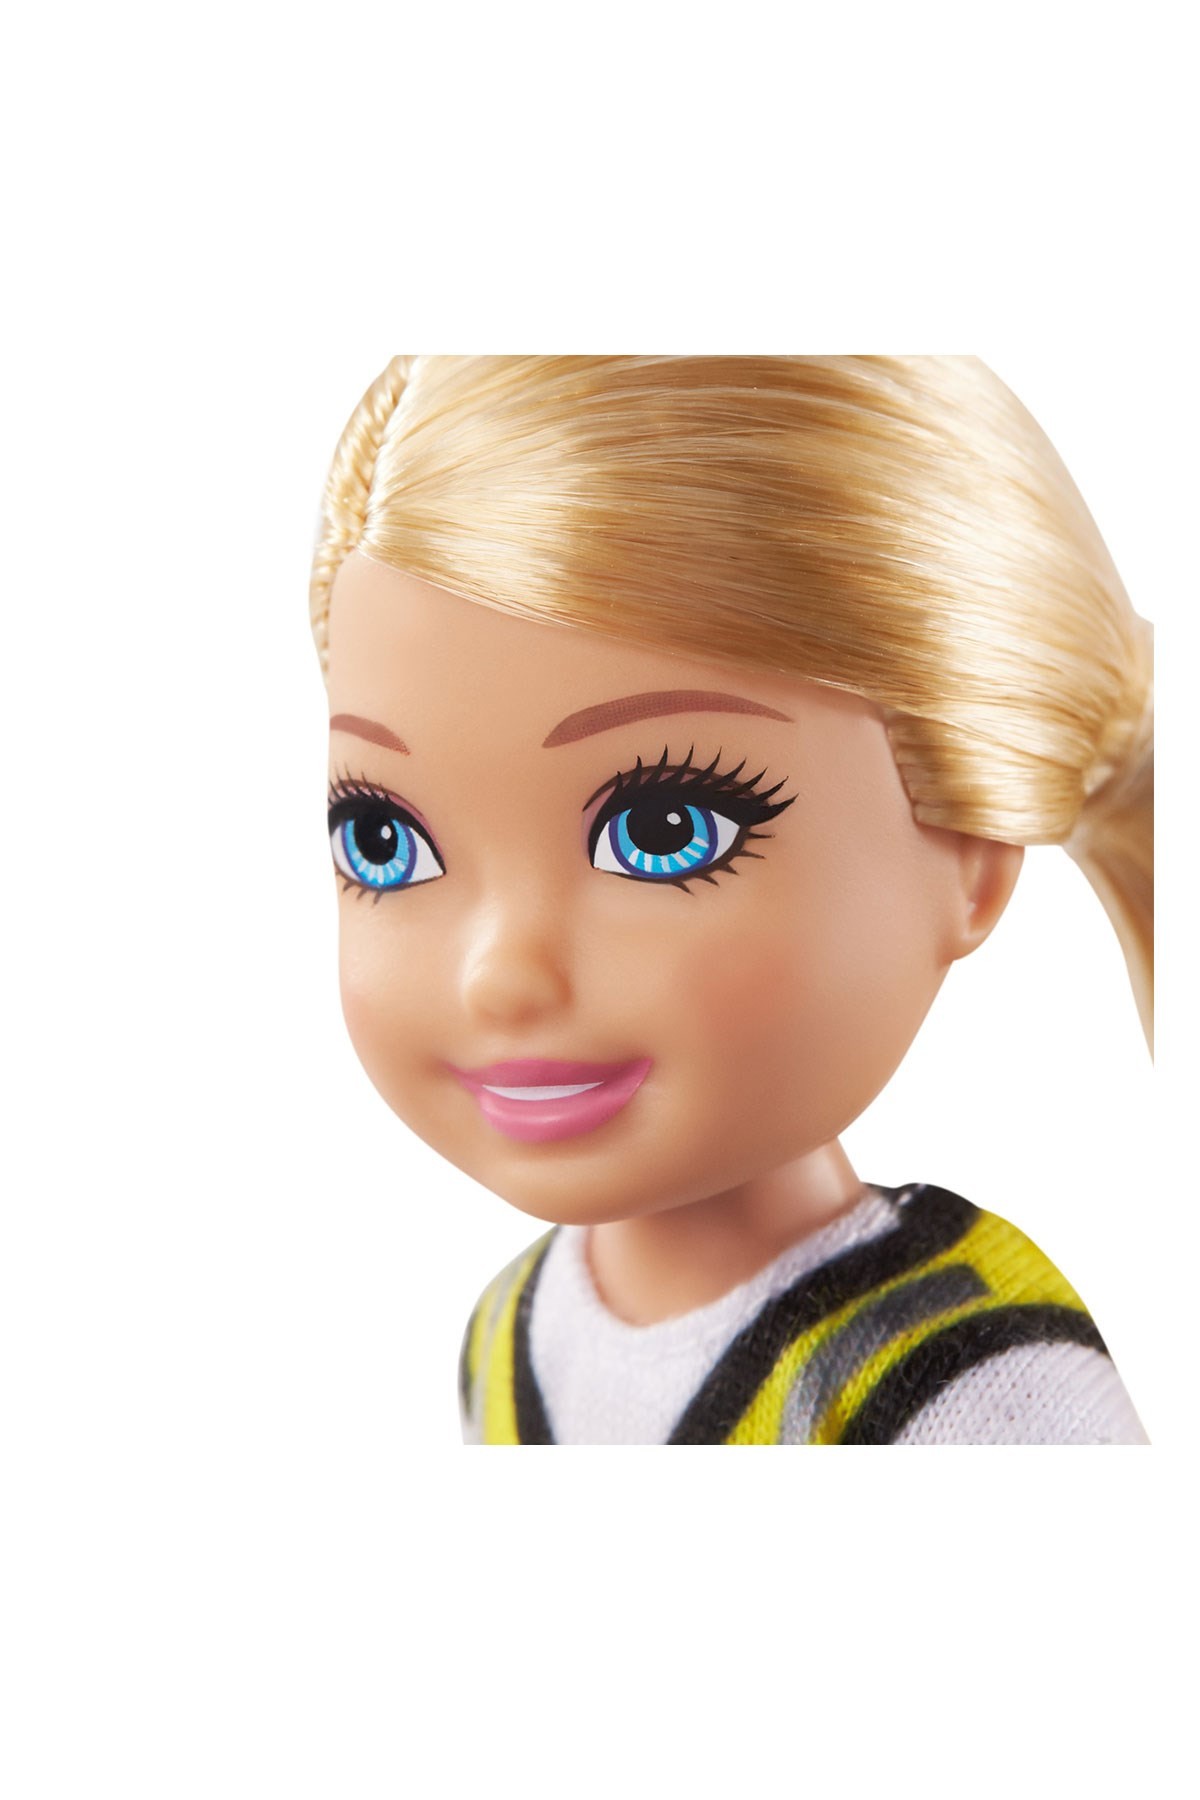 Barbie Chelsea Meslekleri Öğreniyor Bebek Serisi İnşaat Mühendisi GTN87